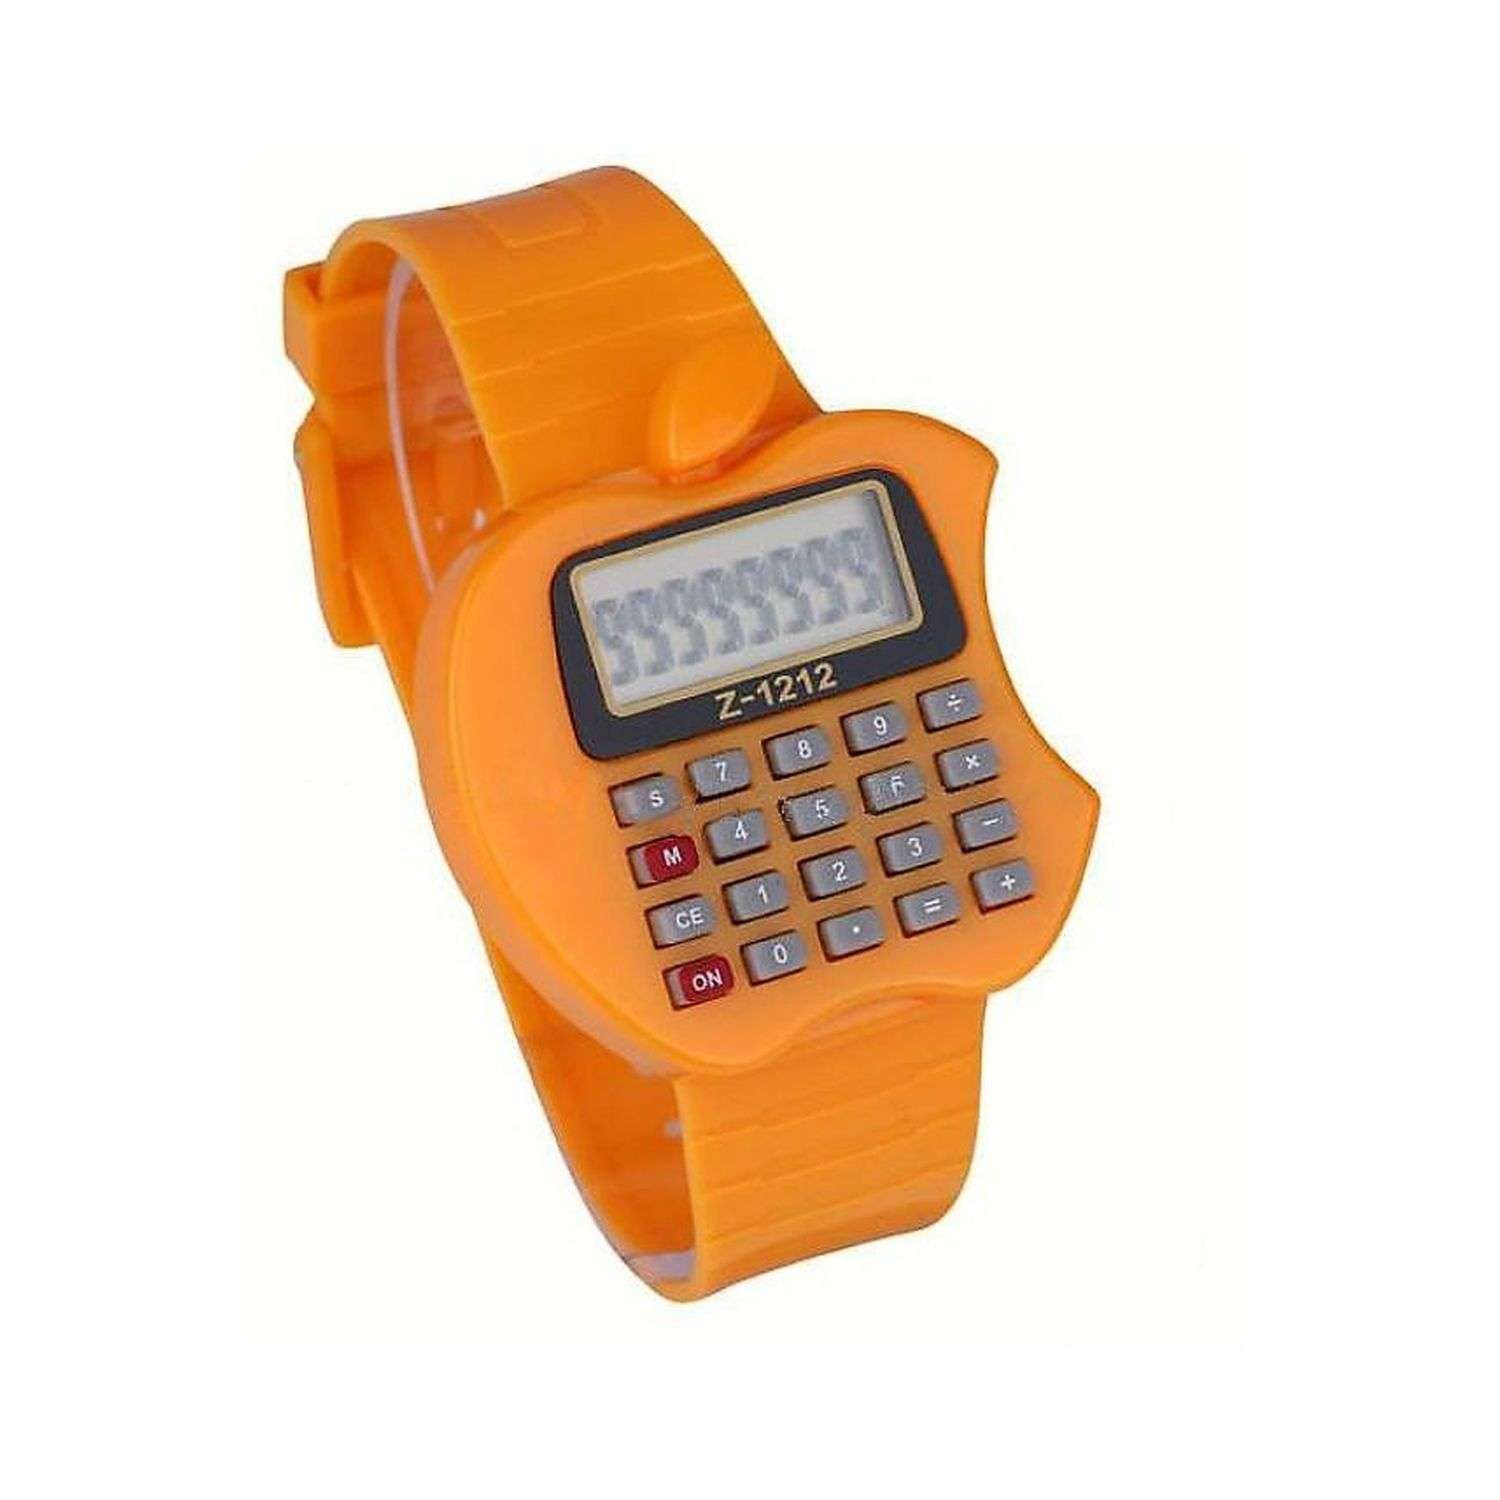 Наручные часы-калькулятор Uniglodis Детские. Яблоко оранжевое - фото 1